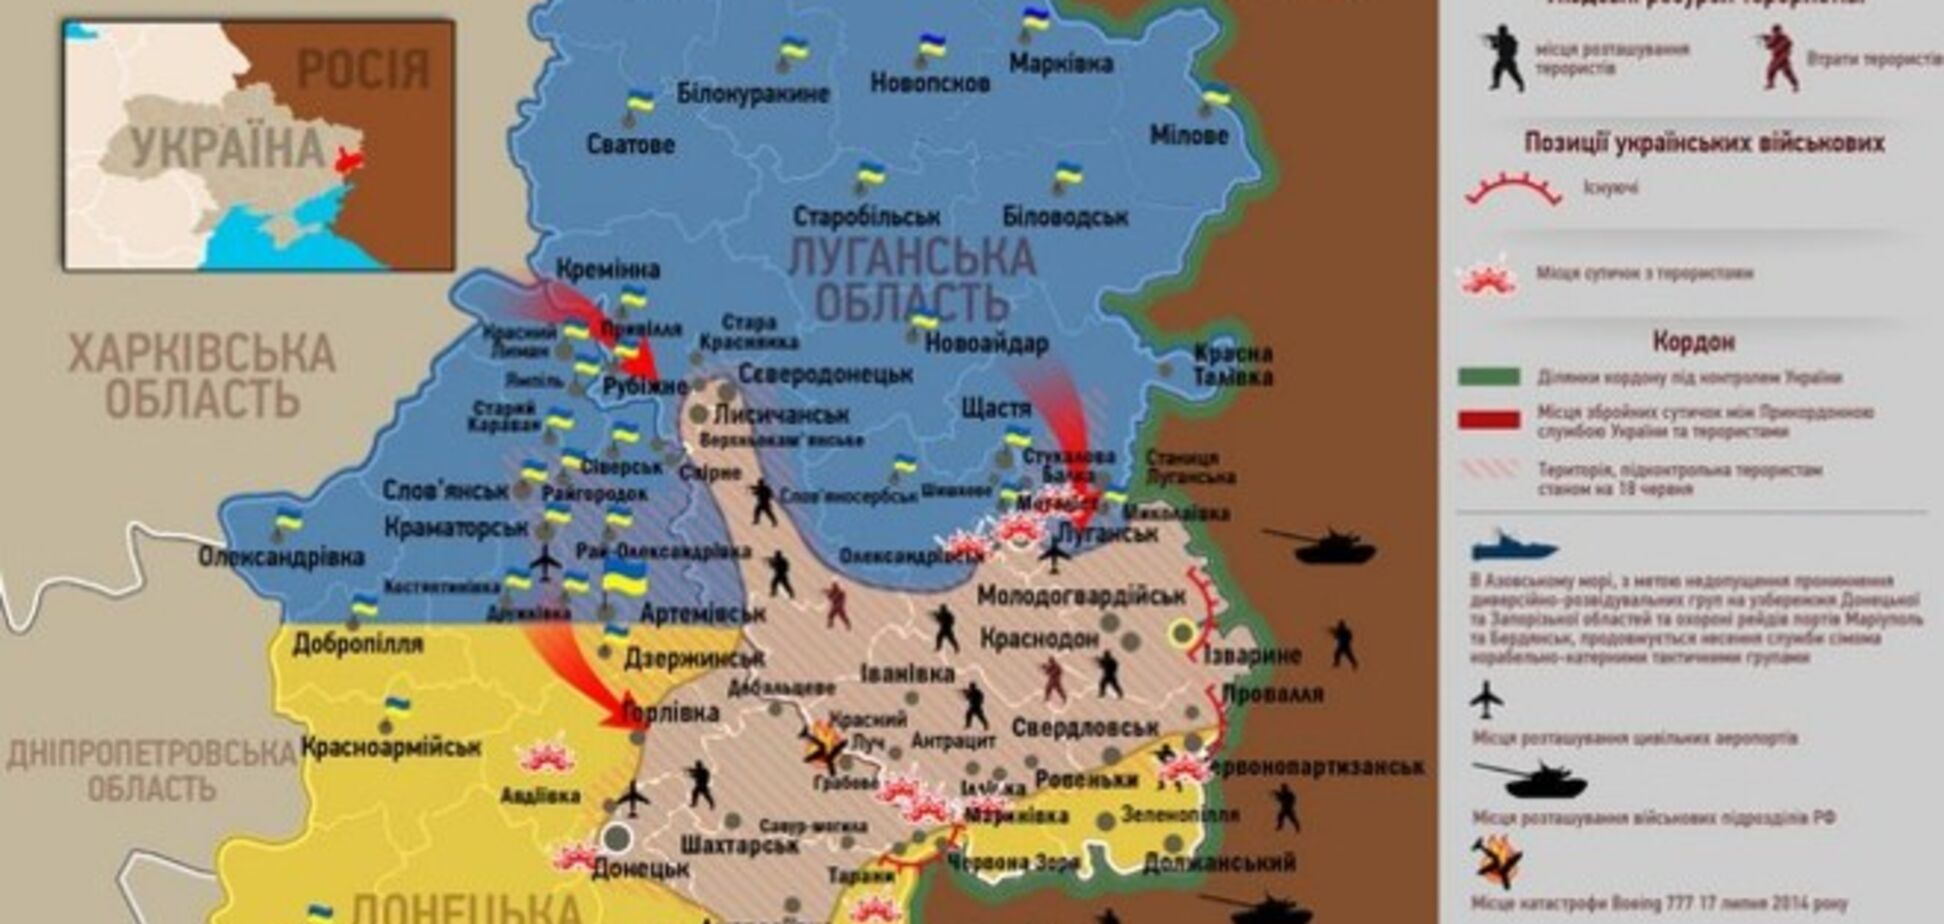 Опублікована актуальна карта боїв в зоні АТО - 21 липня 2014